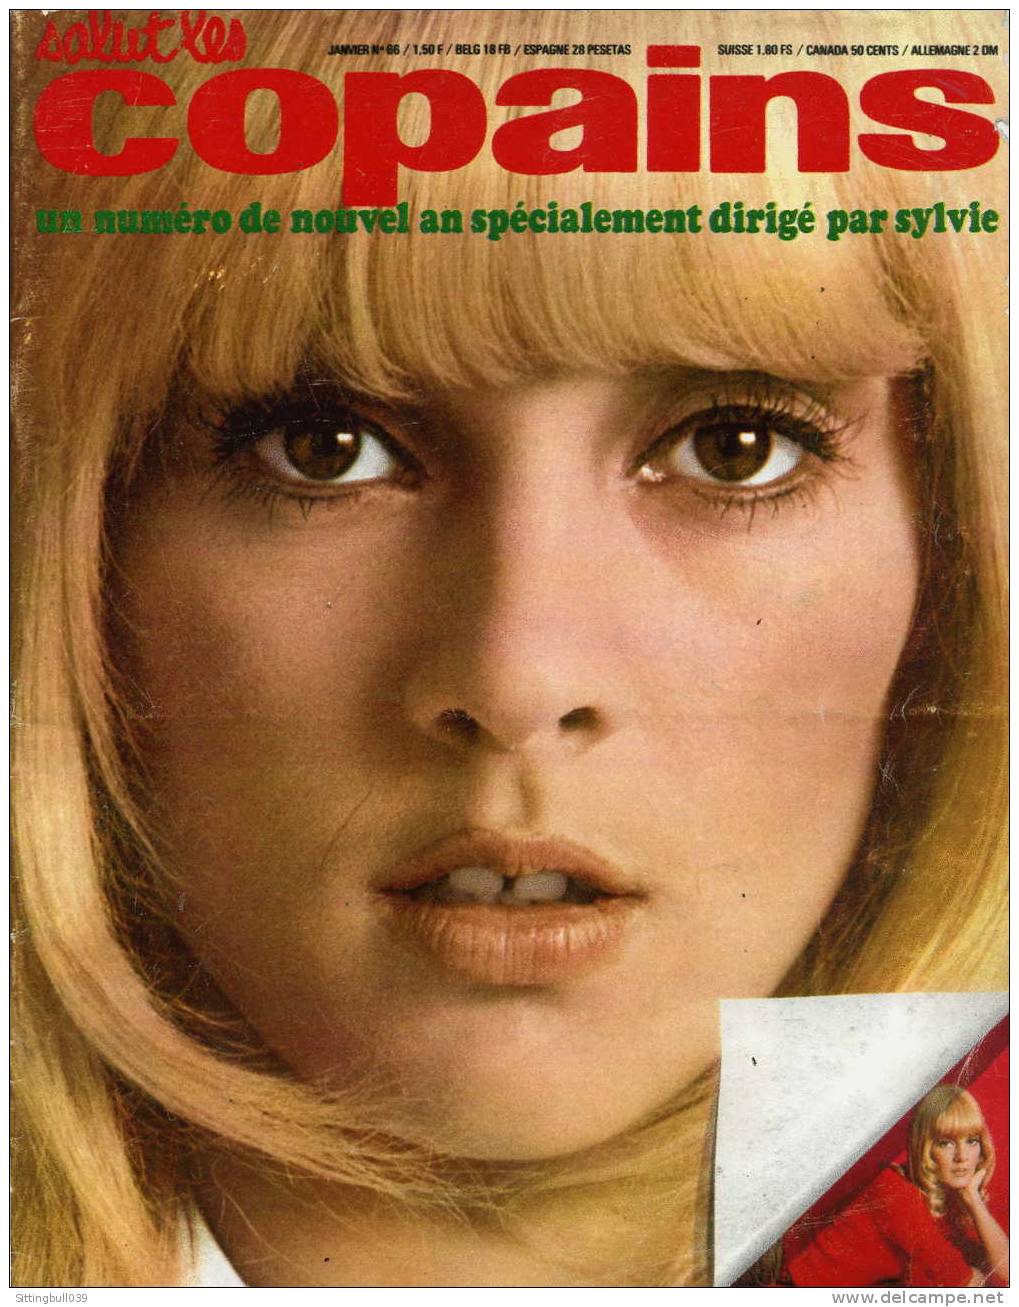 SALUT LES COPAINS N° 66 (SLC) JANV 1968. SYLVIE VARTAN, JOHNNY, LES BEATLES, BARDOT Et ASTERIX Au Ciné. SUPERBES PHOTOS. - Musik